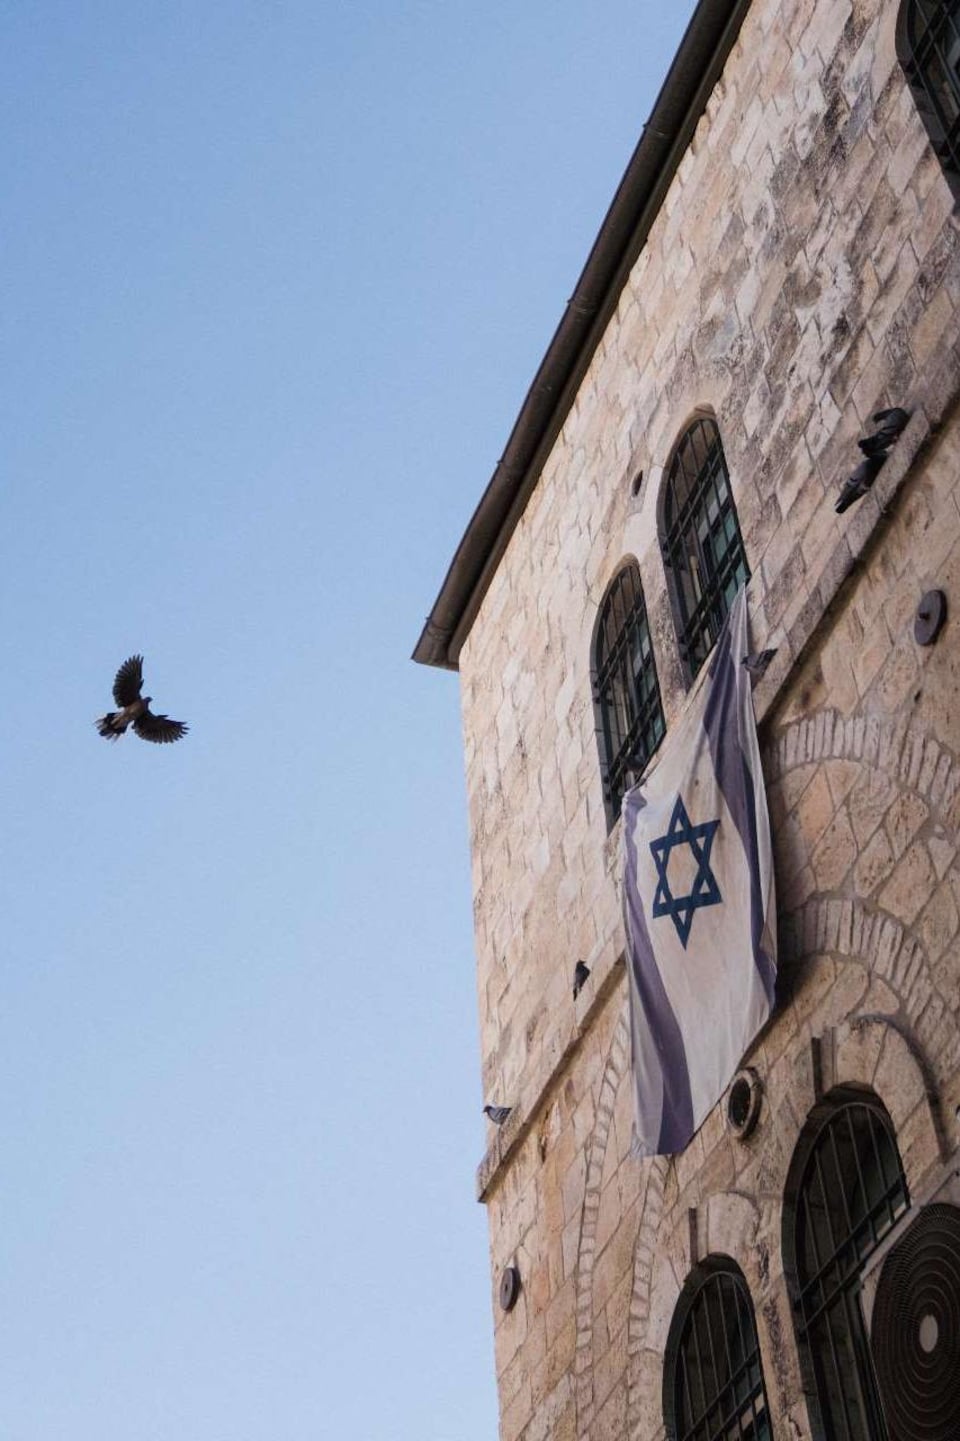 Un oiseau passe entre deux immeubles d'où pend un drapeau israélien.